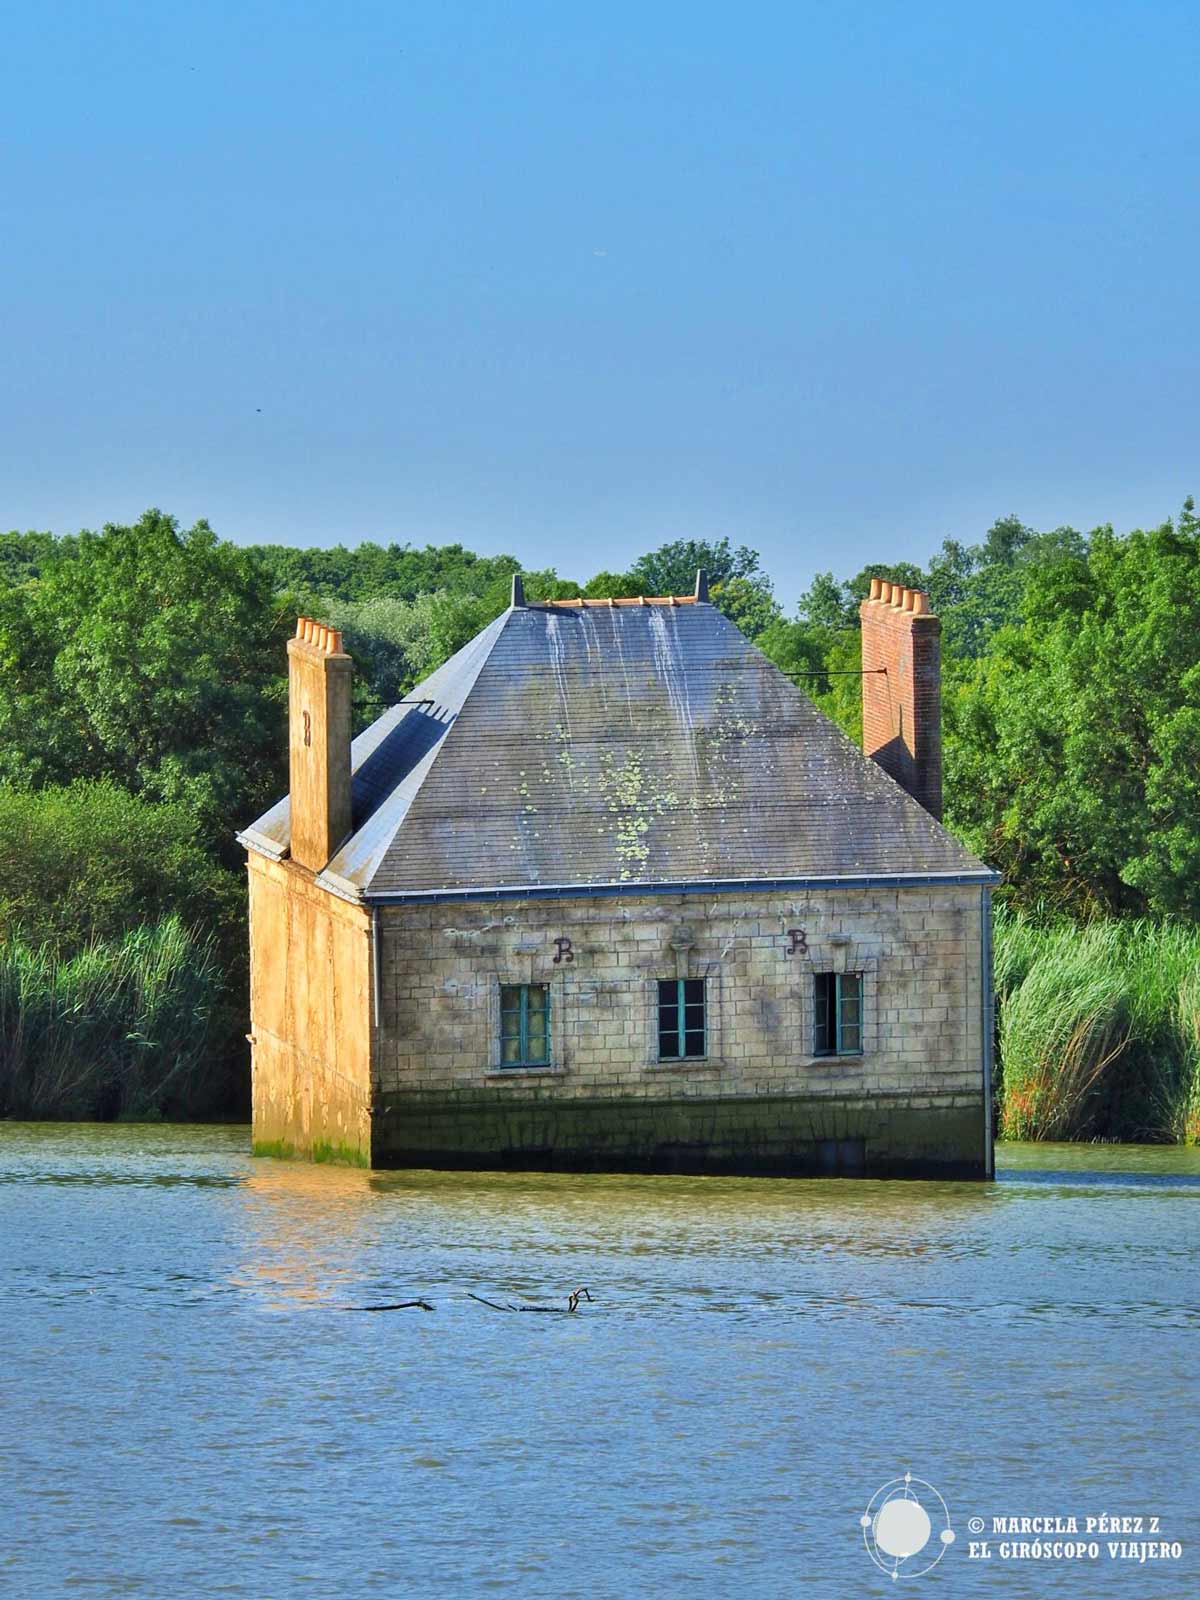 La Maison Dans la Loire, casa hundida en el estuario del Loira